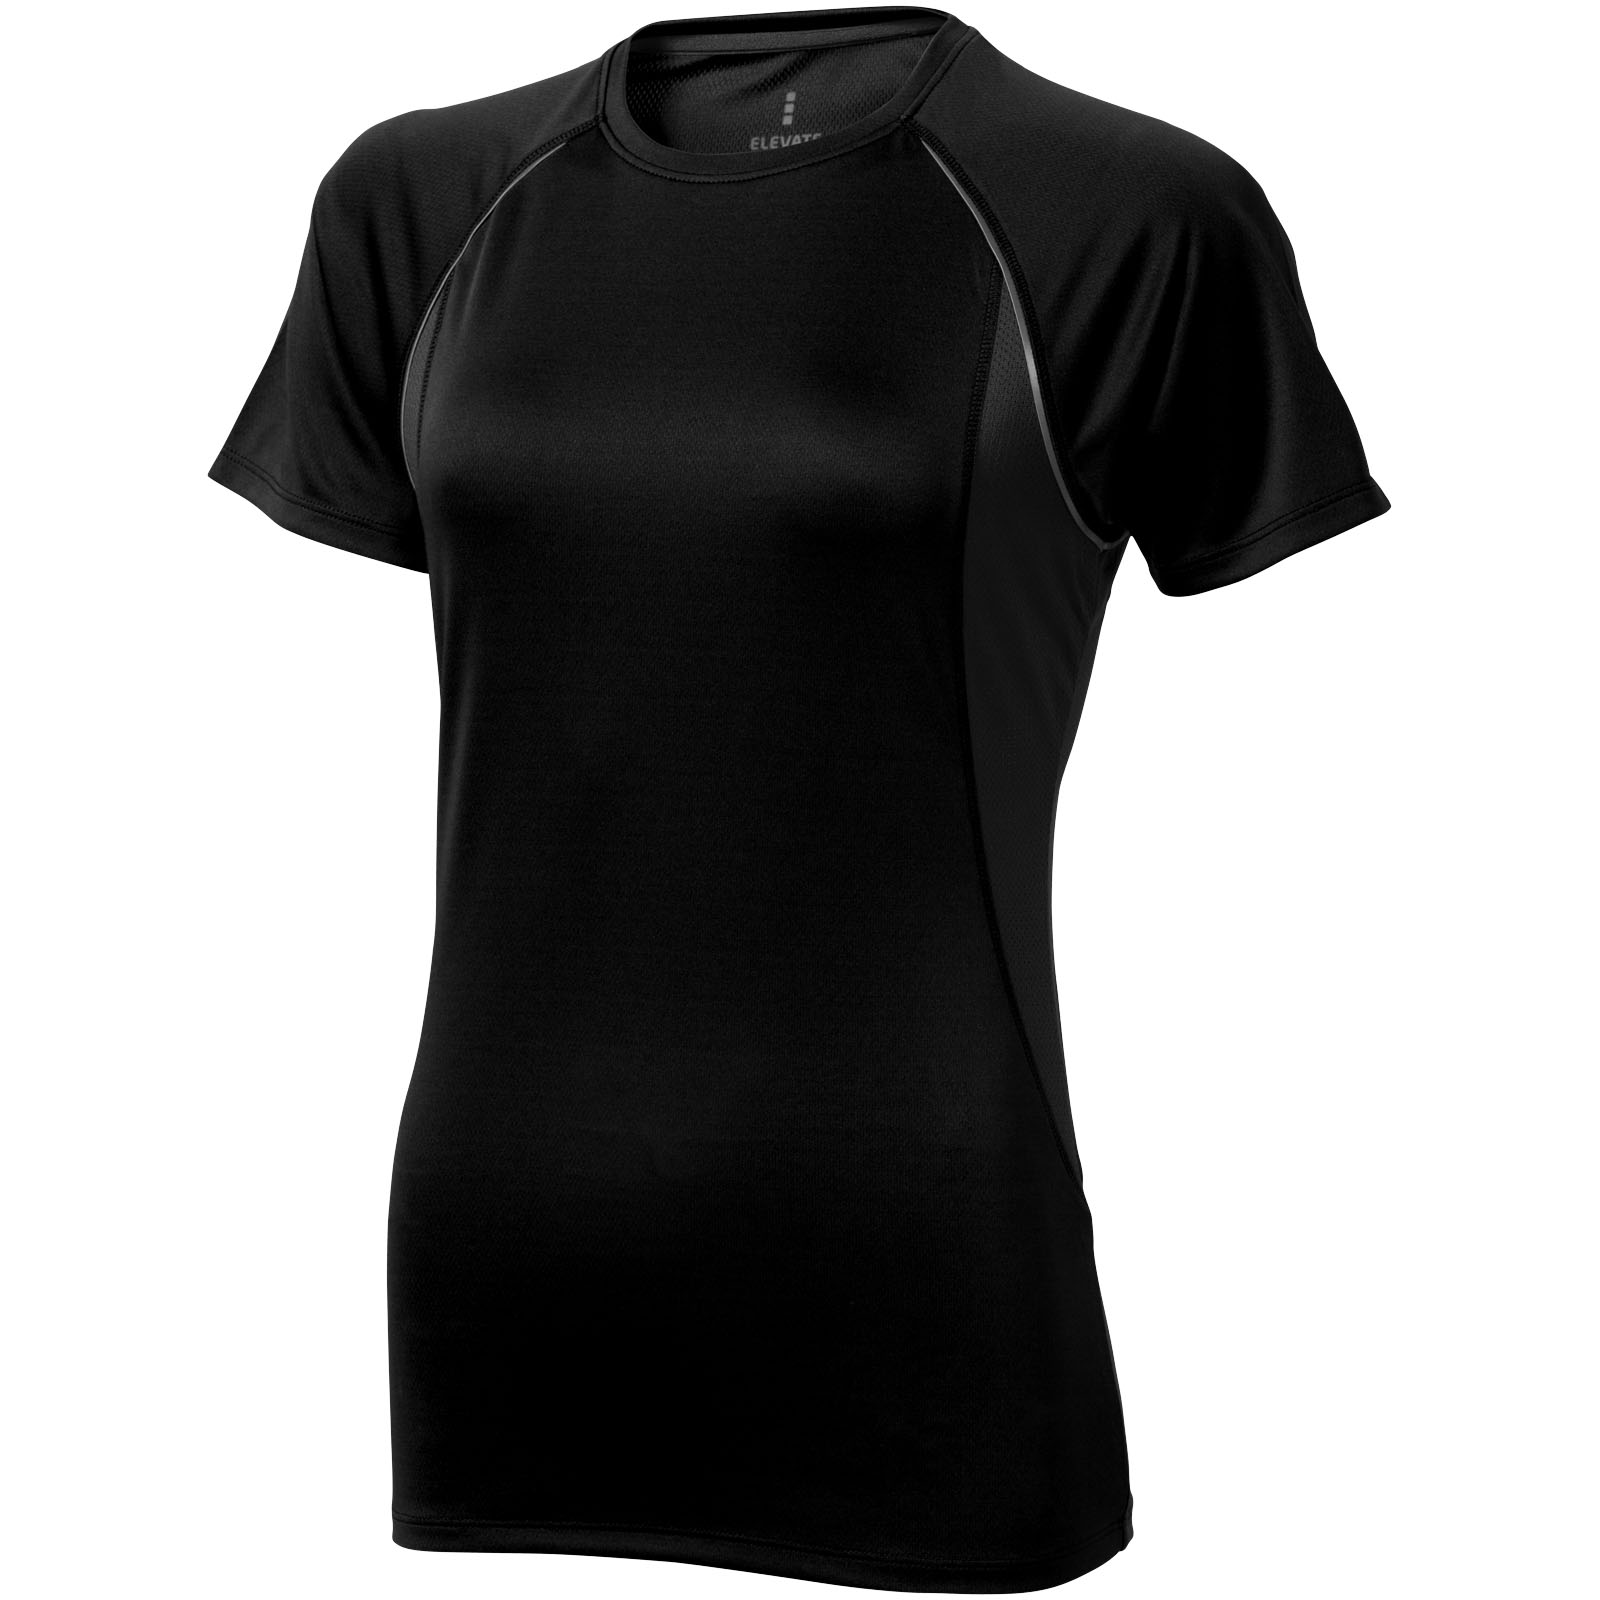 Women's short sleeve cool fit t-shirt Quebec